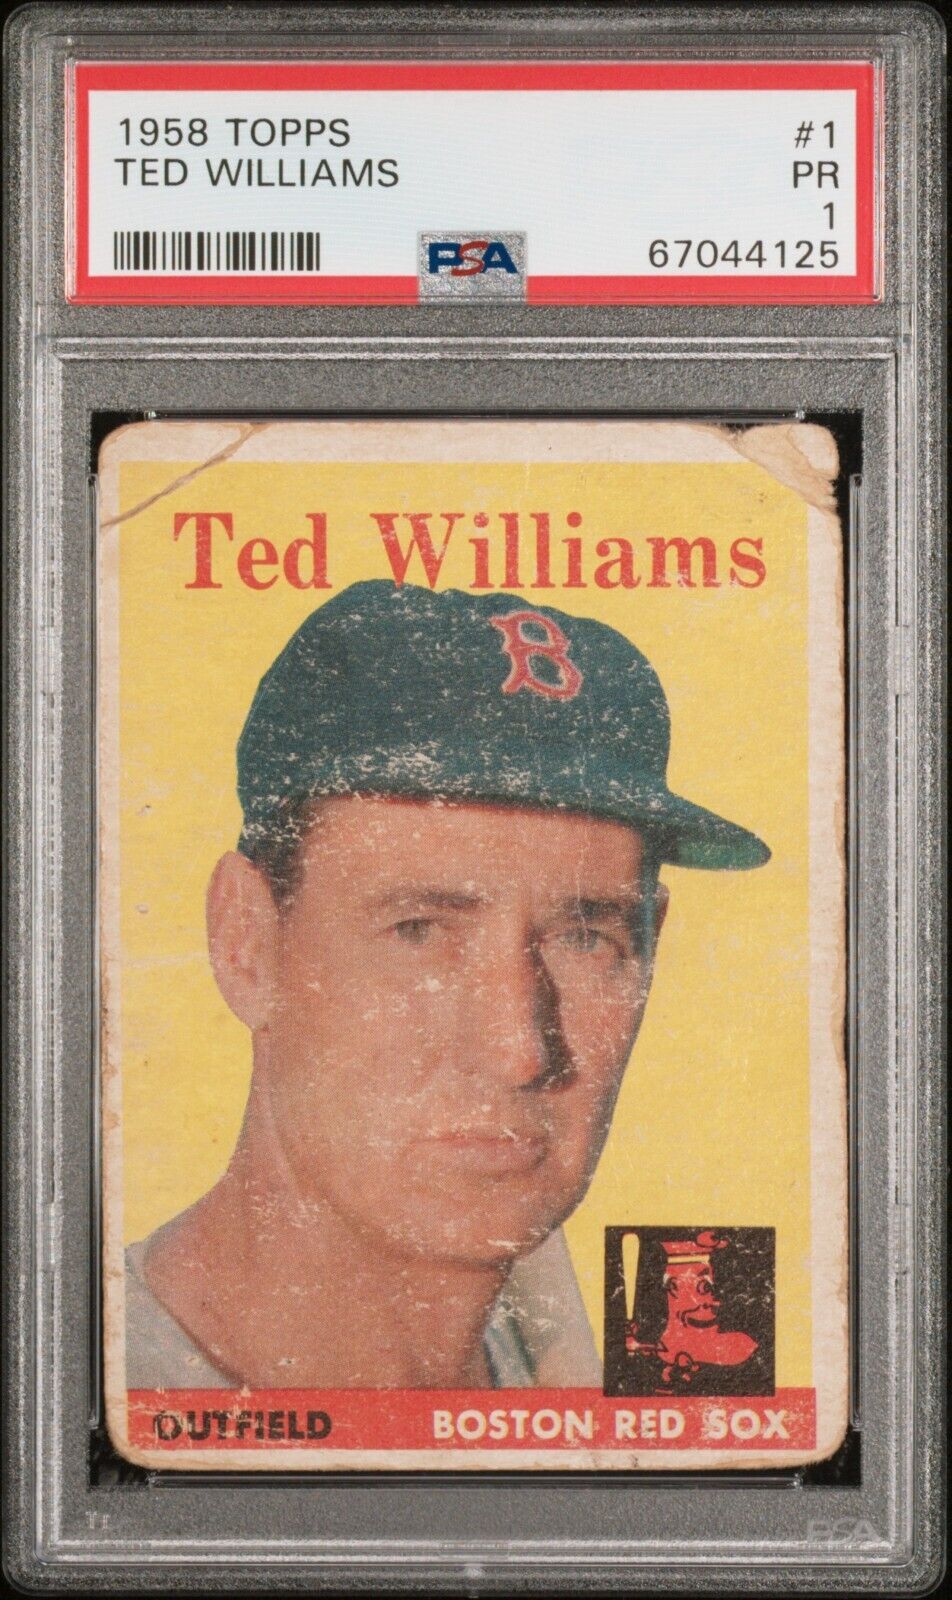 1958 Topps Ted Williams #1 PSA 1 PR HOF!